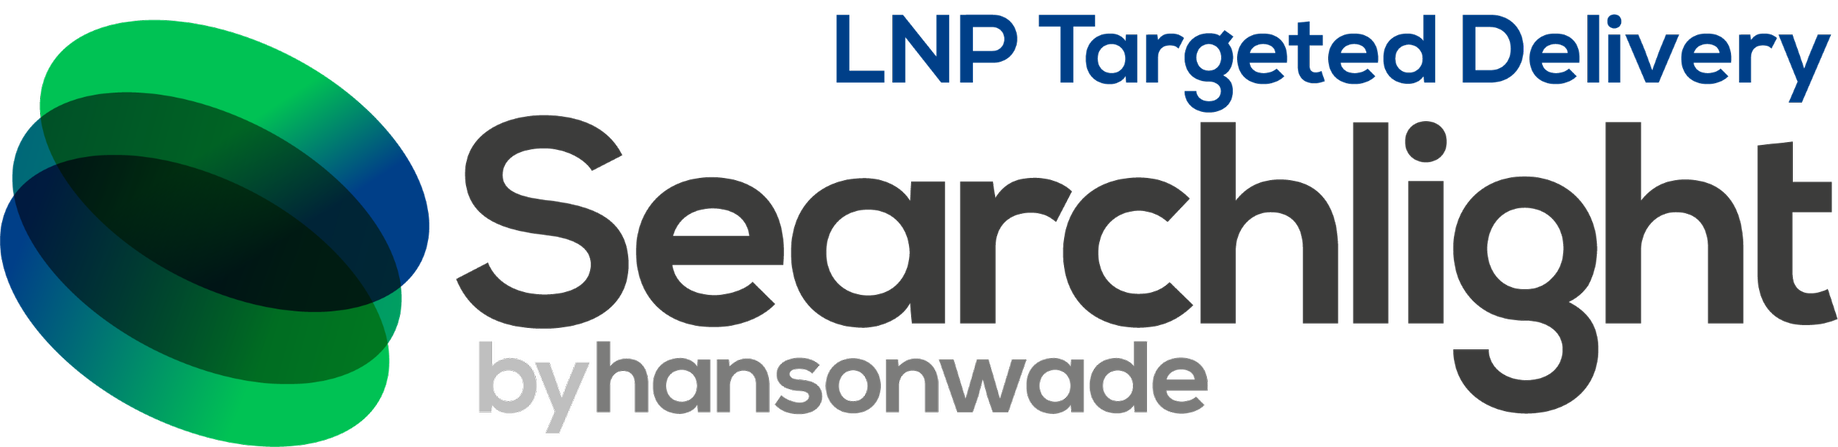 lnp logo